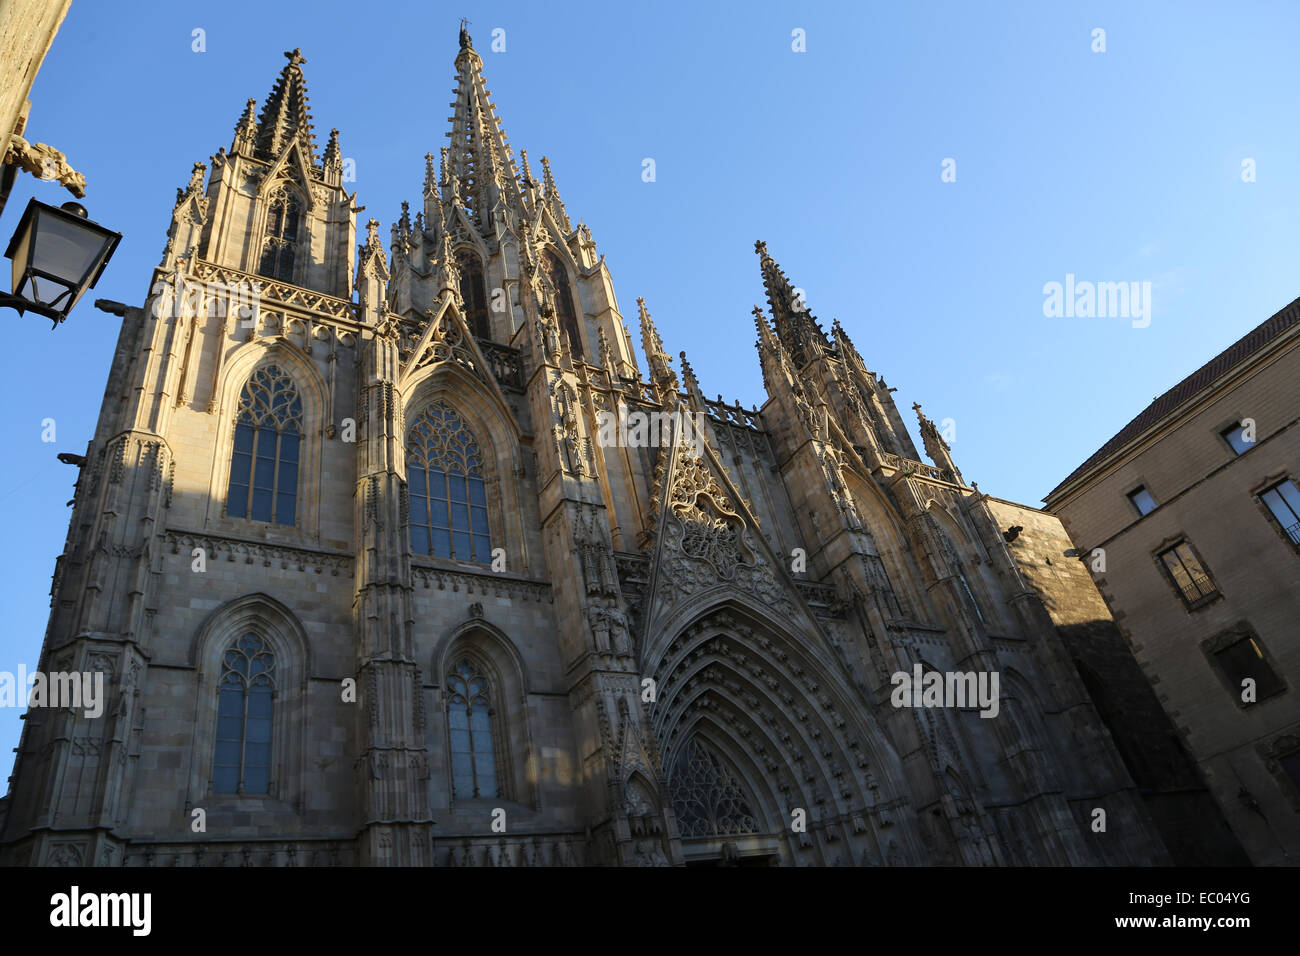 Spagna. La Catalogna. La cattedrale di Barcellona. Esterno. Facciata in stile neo-gotico. Xix secolo. Foto Stock